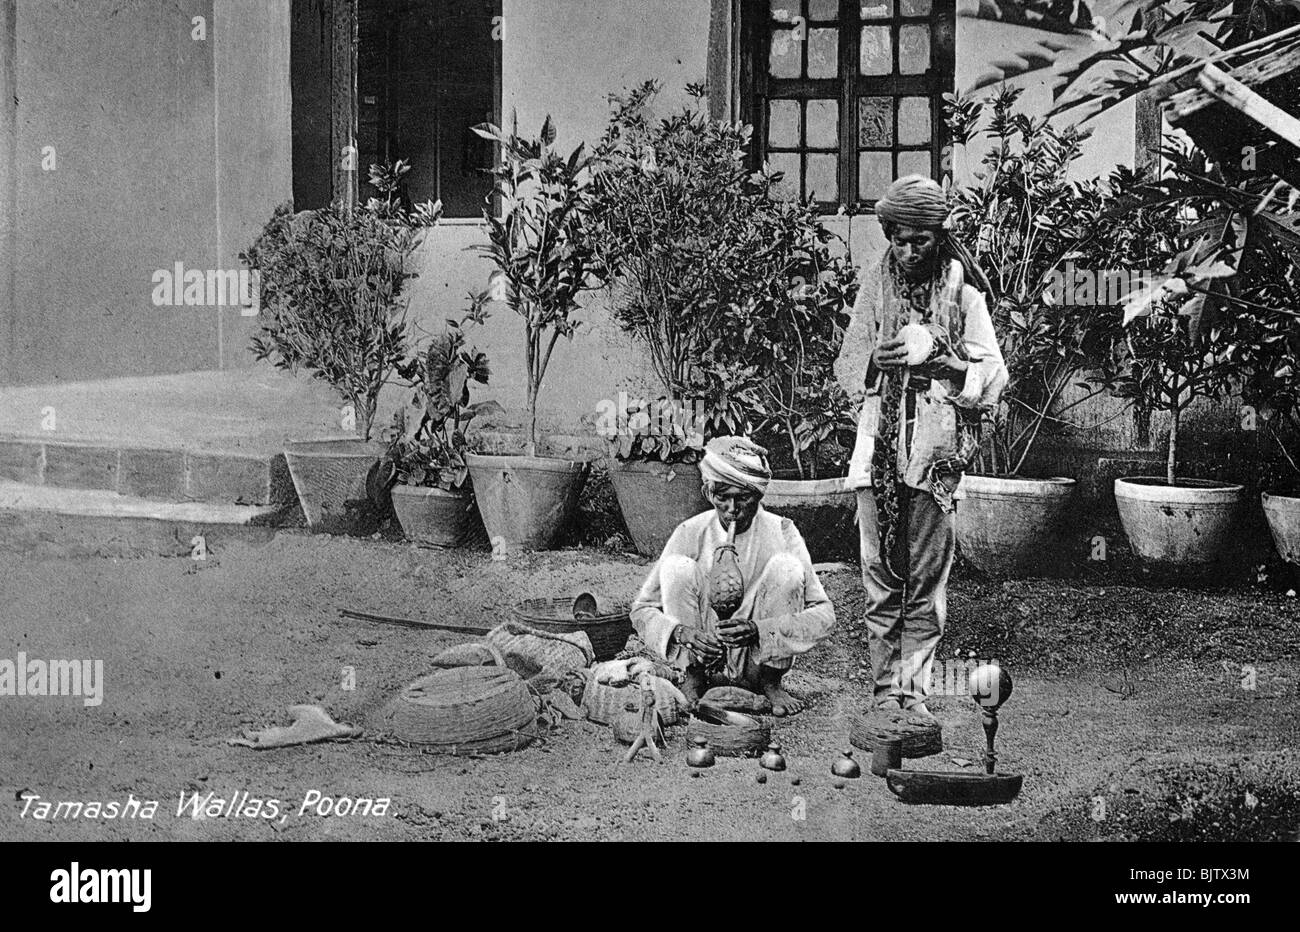 Tamasha Wallas', 'Pune (Poona), l'Inde, au début du xxe siècle. Artiste : Inconnu Banque D'Images